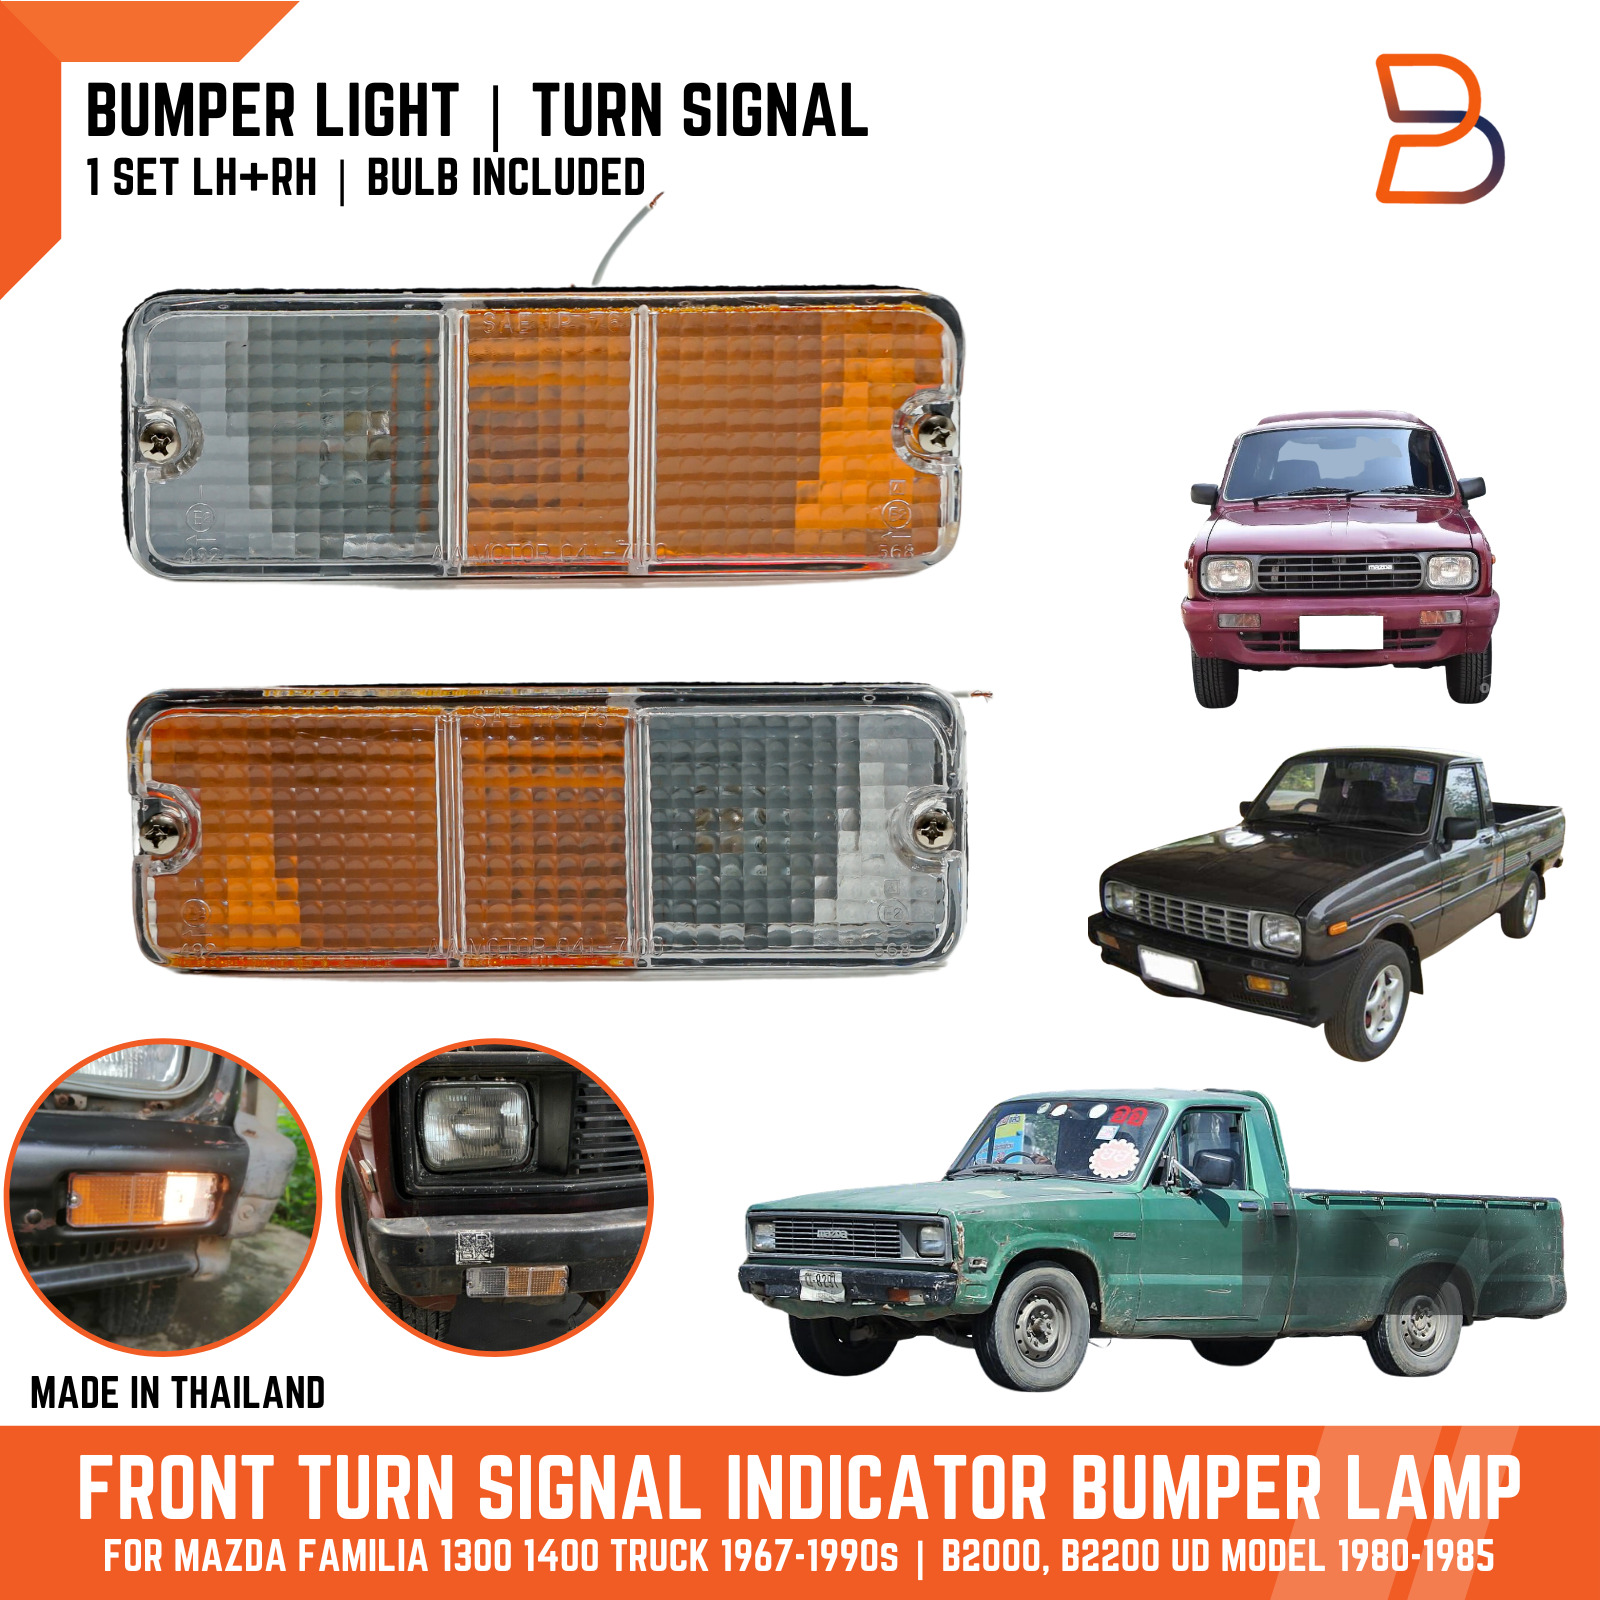 FRONT BUMPER TURN SIGNAL LIGHT FIT MAZDA B2000 B2200 UD 1980-1985 FAMILIA TRUCK